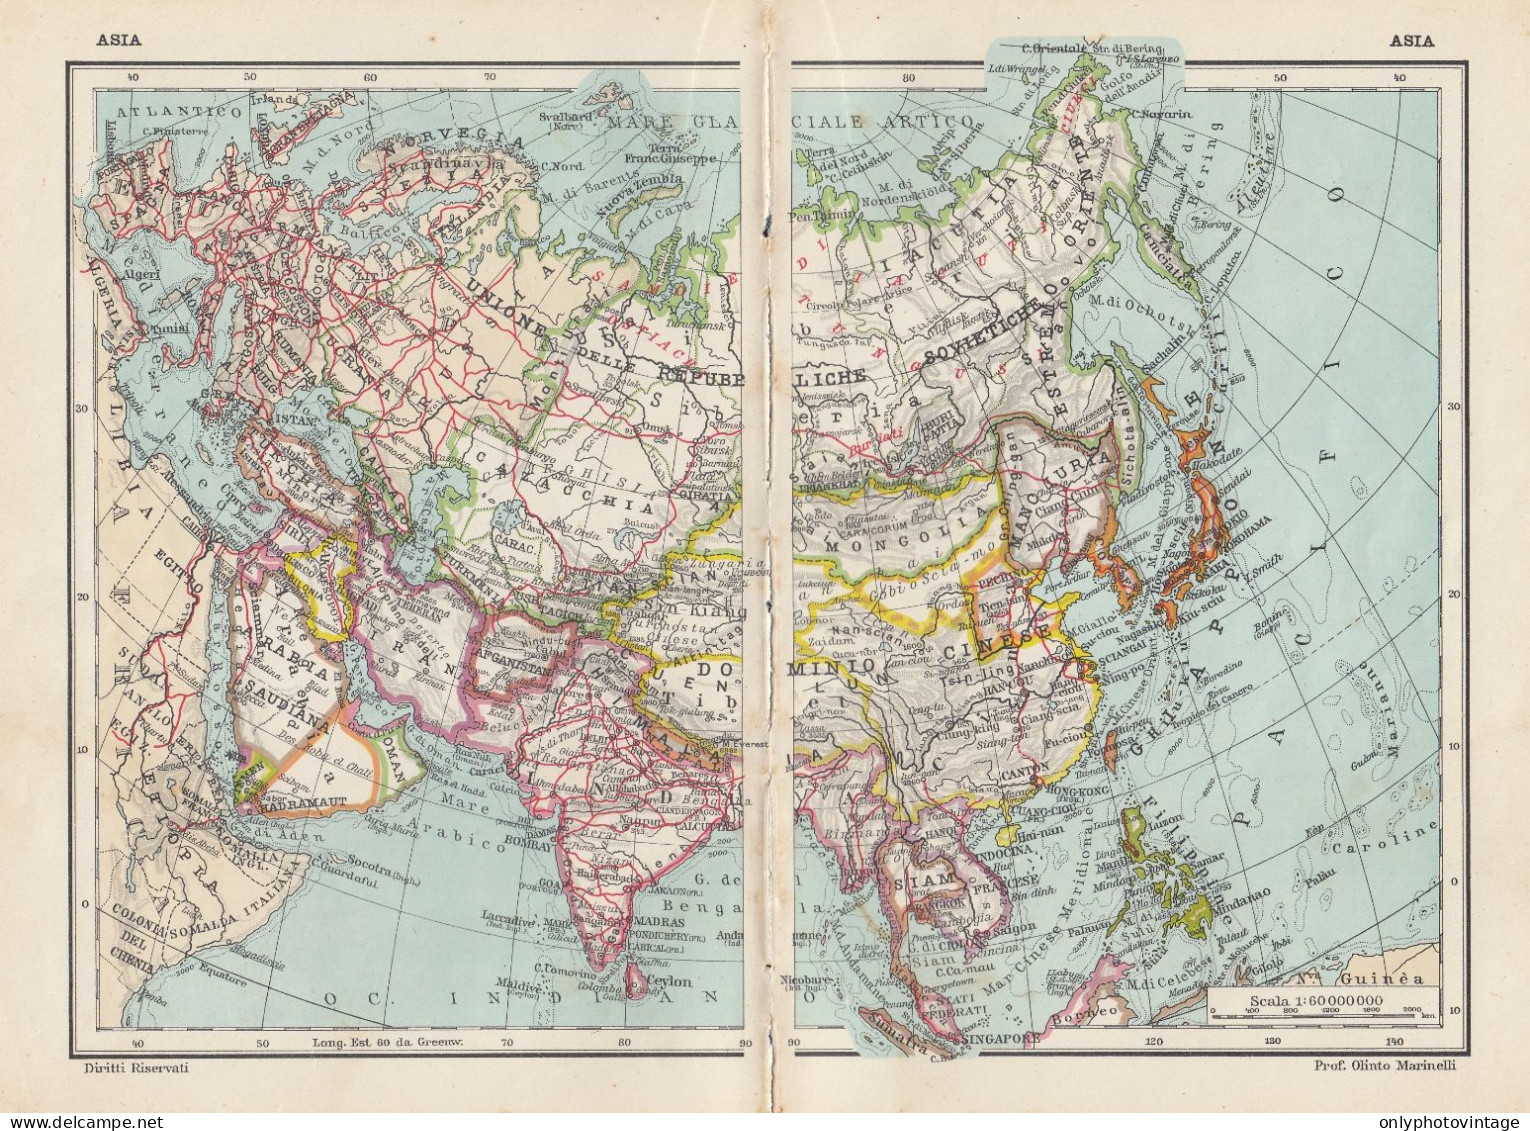 Asia - Carta Geografica D'epoca - 1936 Vintage Map - Geographische Kaarten